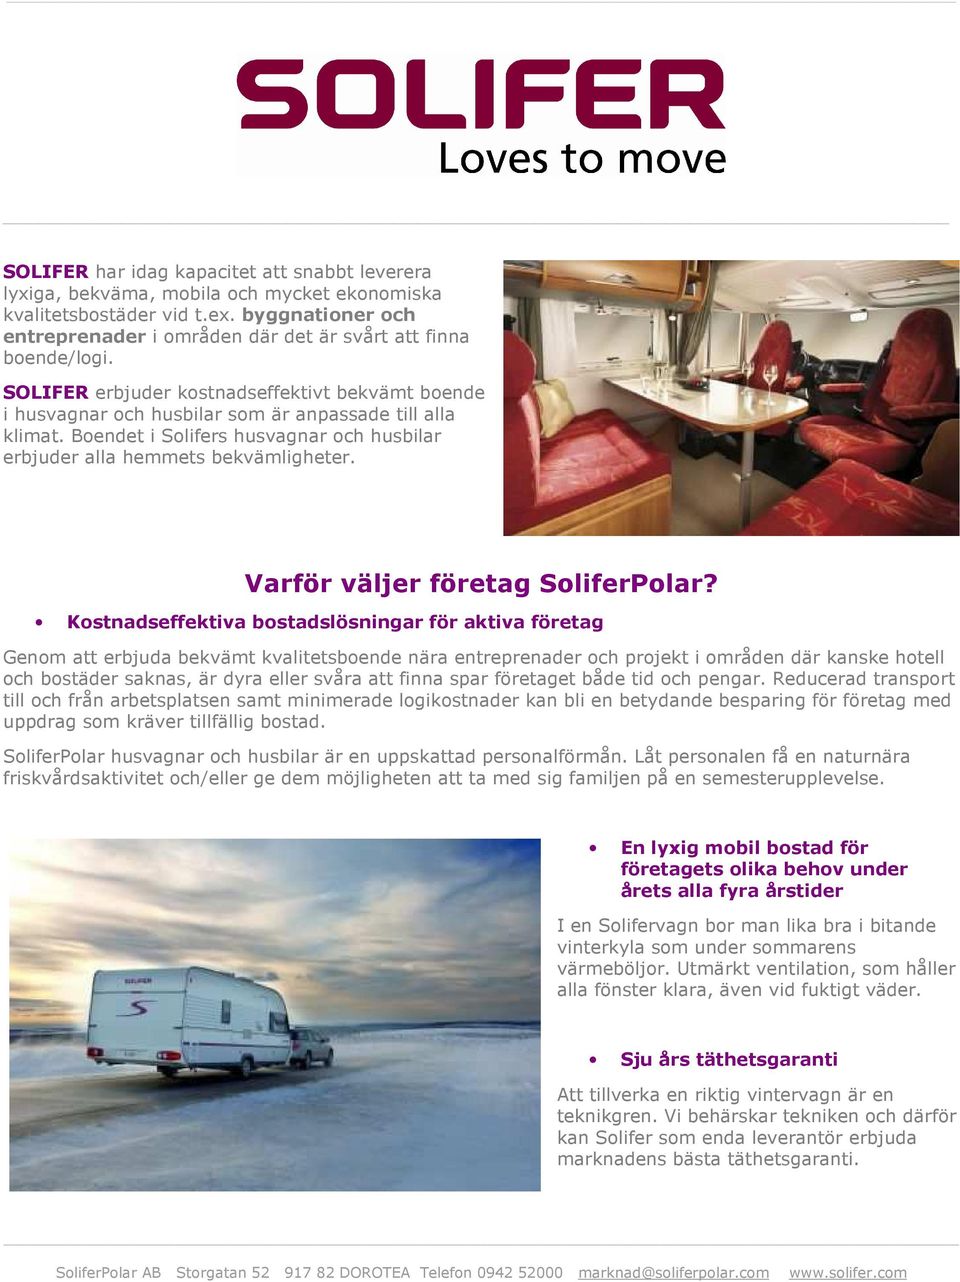 Boendet i Solifers husvagnar och husbilar erbjuder alla hemmets bekvämligheter. Varför väljer företag SoliferPolar?